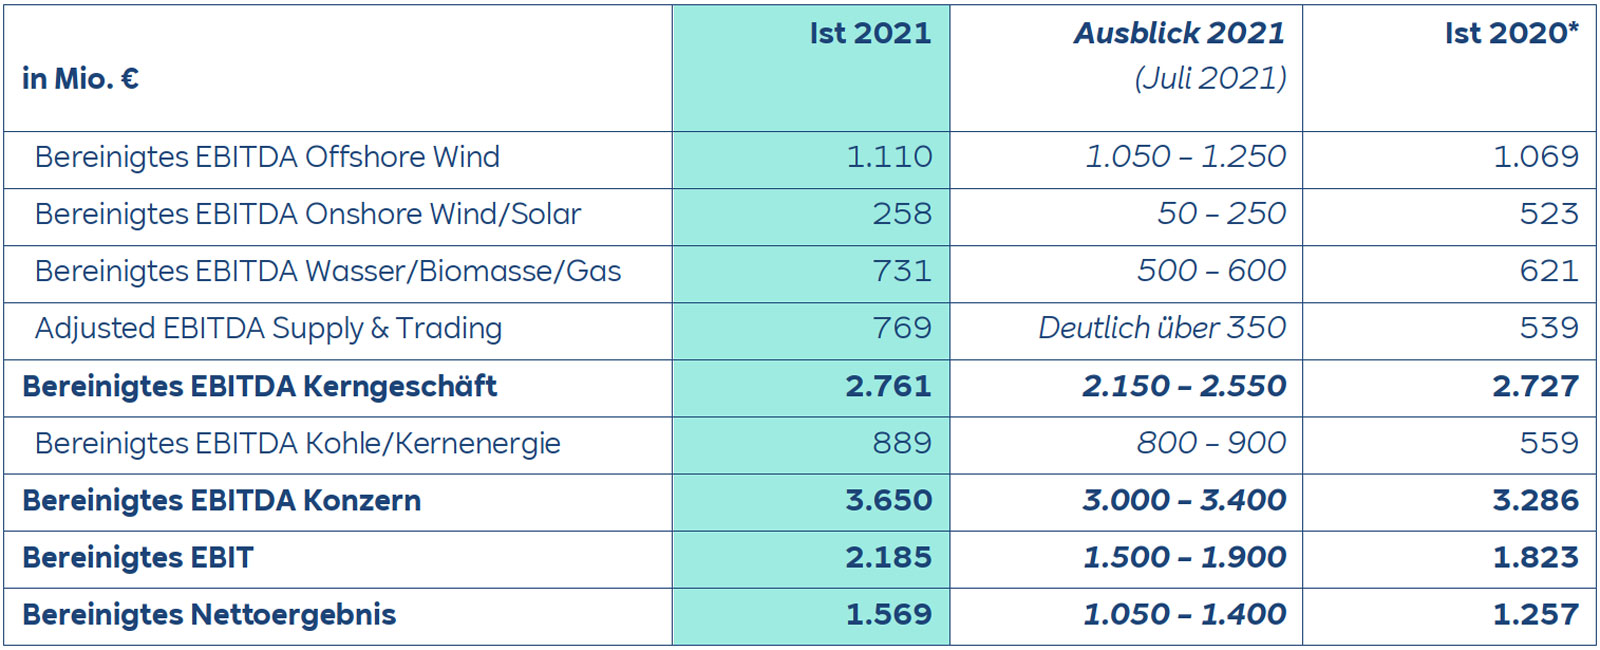 Vorläufiges Ergebnis von RWE für das Geschäftsjahr 2021 übertrifft die Prognose